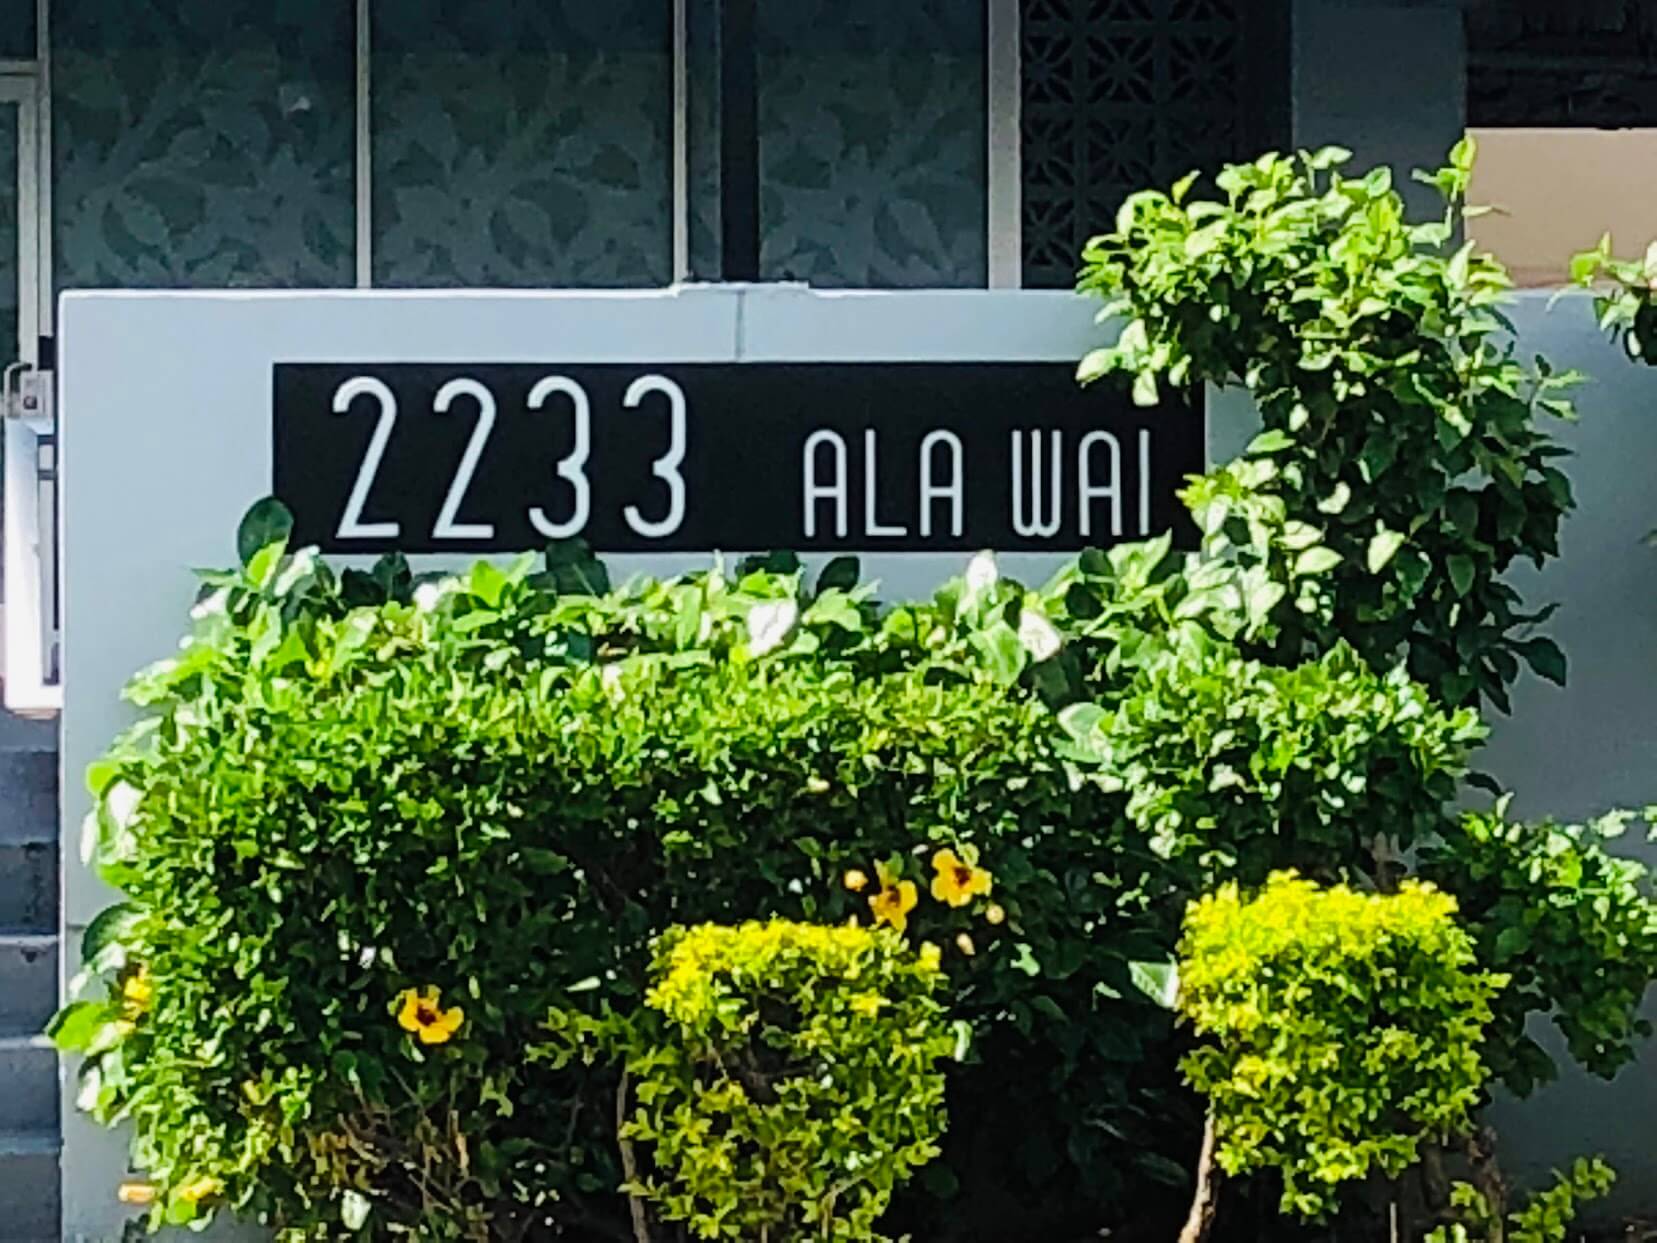 2233 Ala Waiの看板